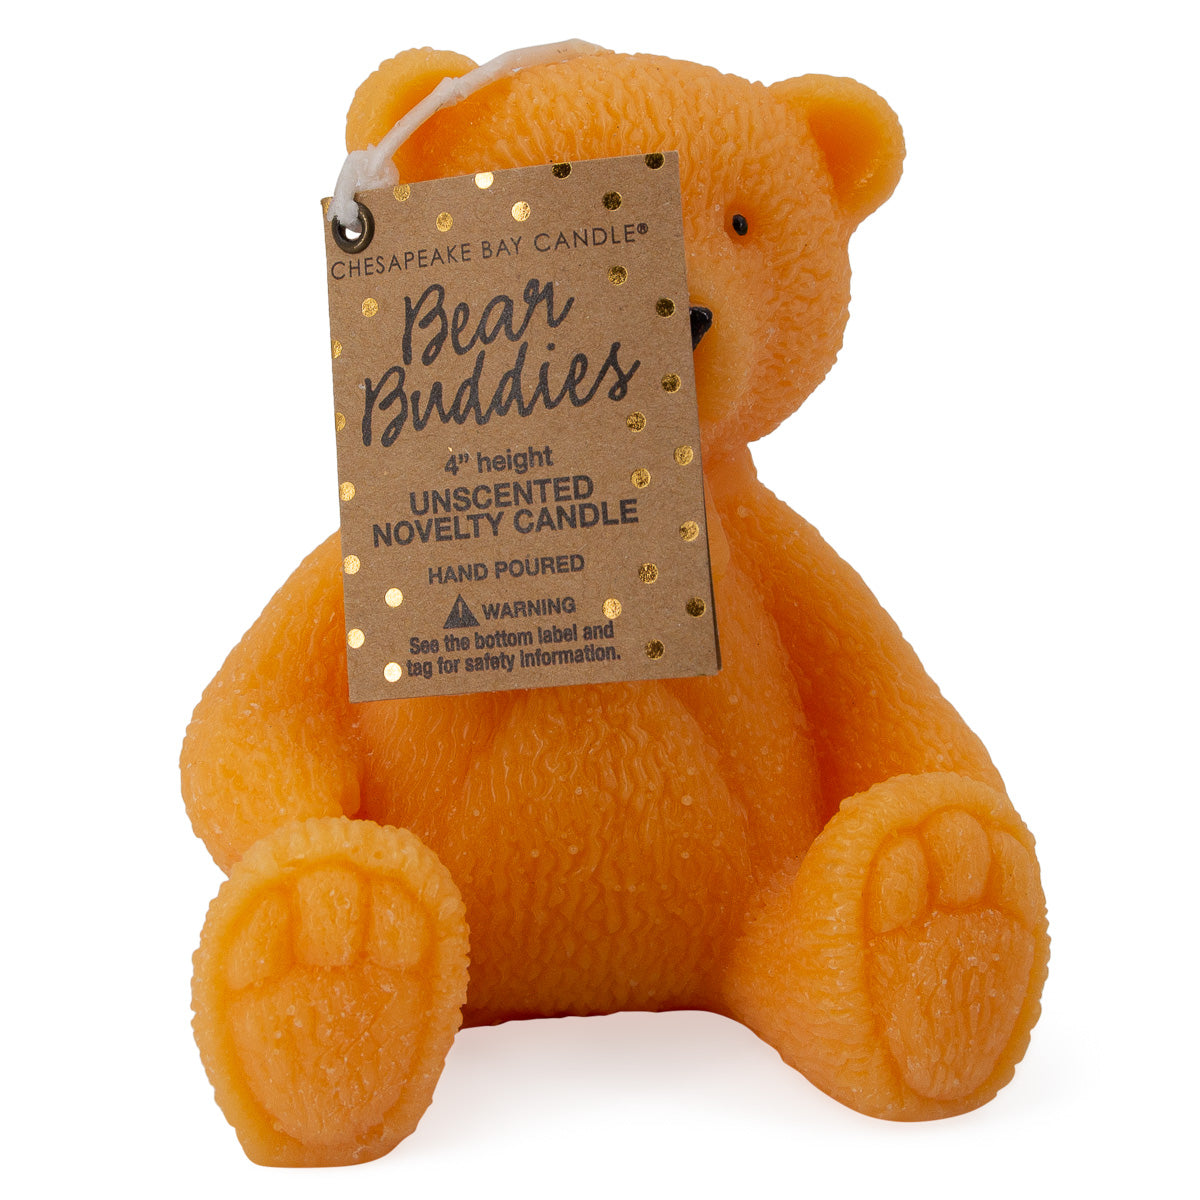 Chesapeake Bay Bear Buddies Teddy Bear Candle – 9oz, Unscented